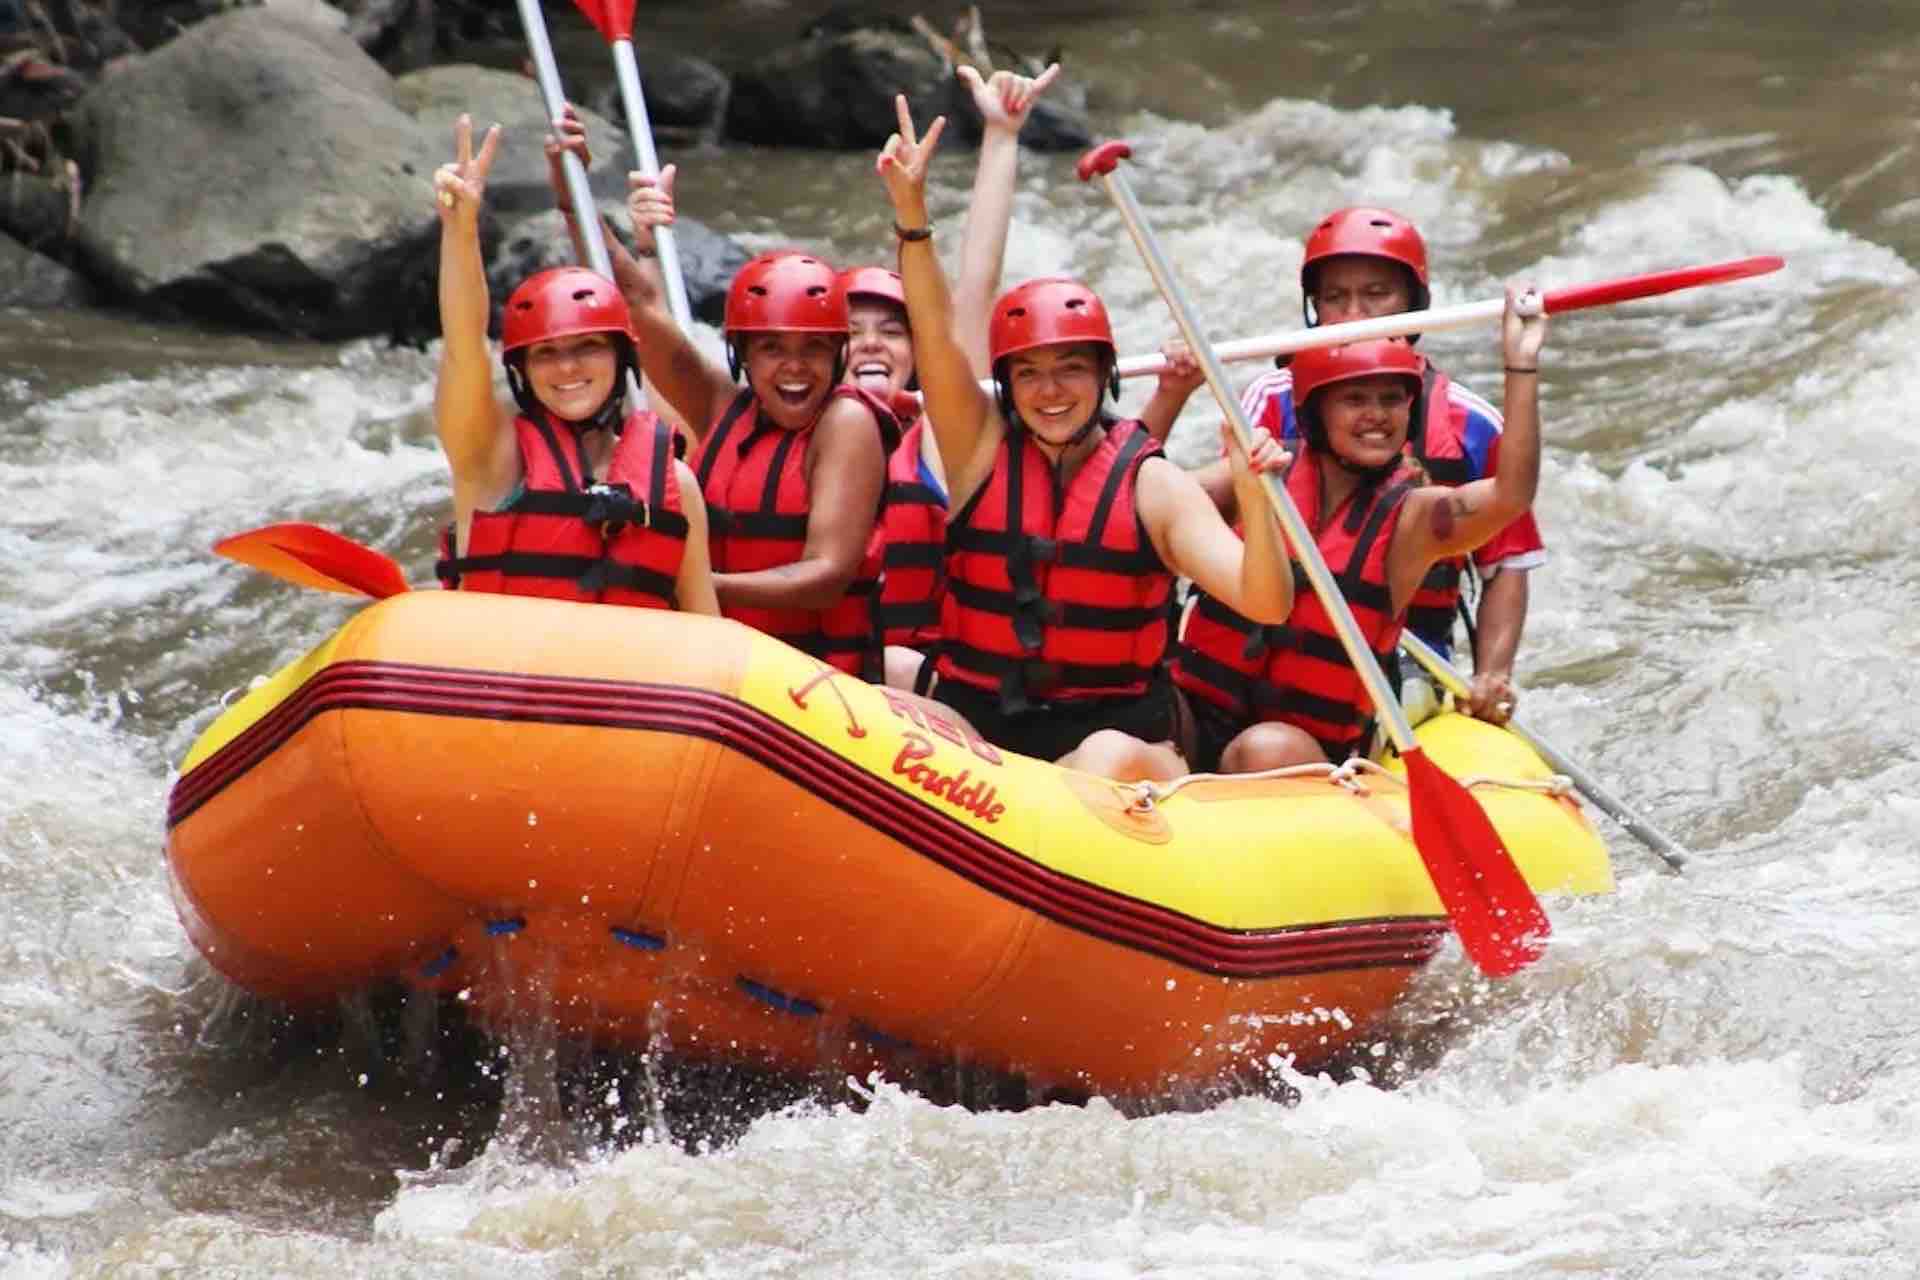 Bali river rafting guests cheering